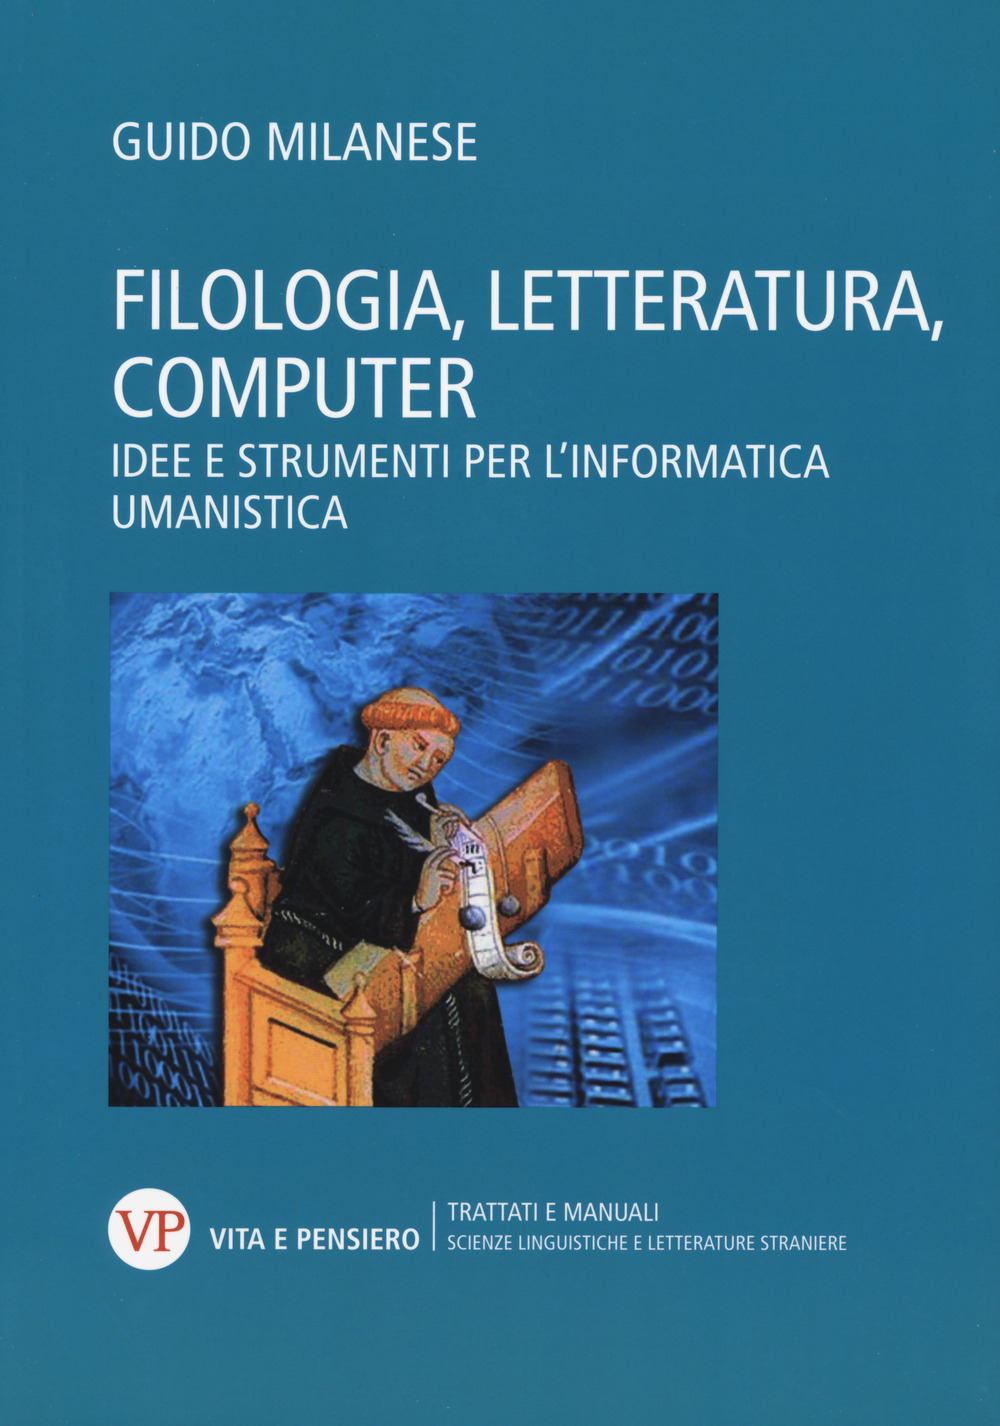 Filologia, letteratura, computer. Idee e strumenti per l'informatica umanistica